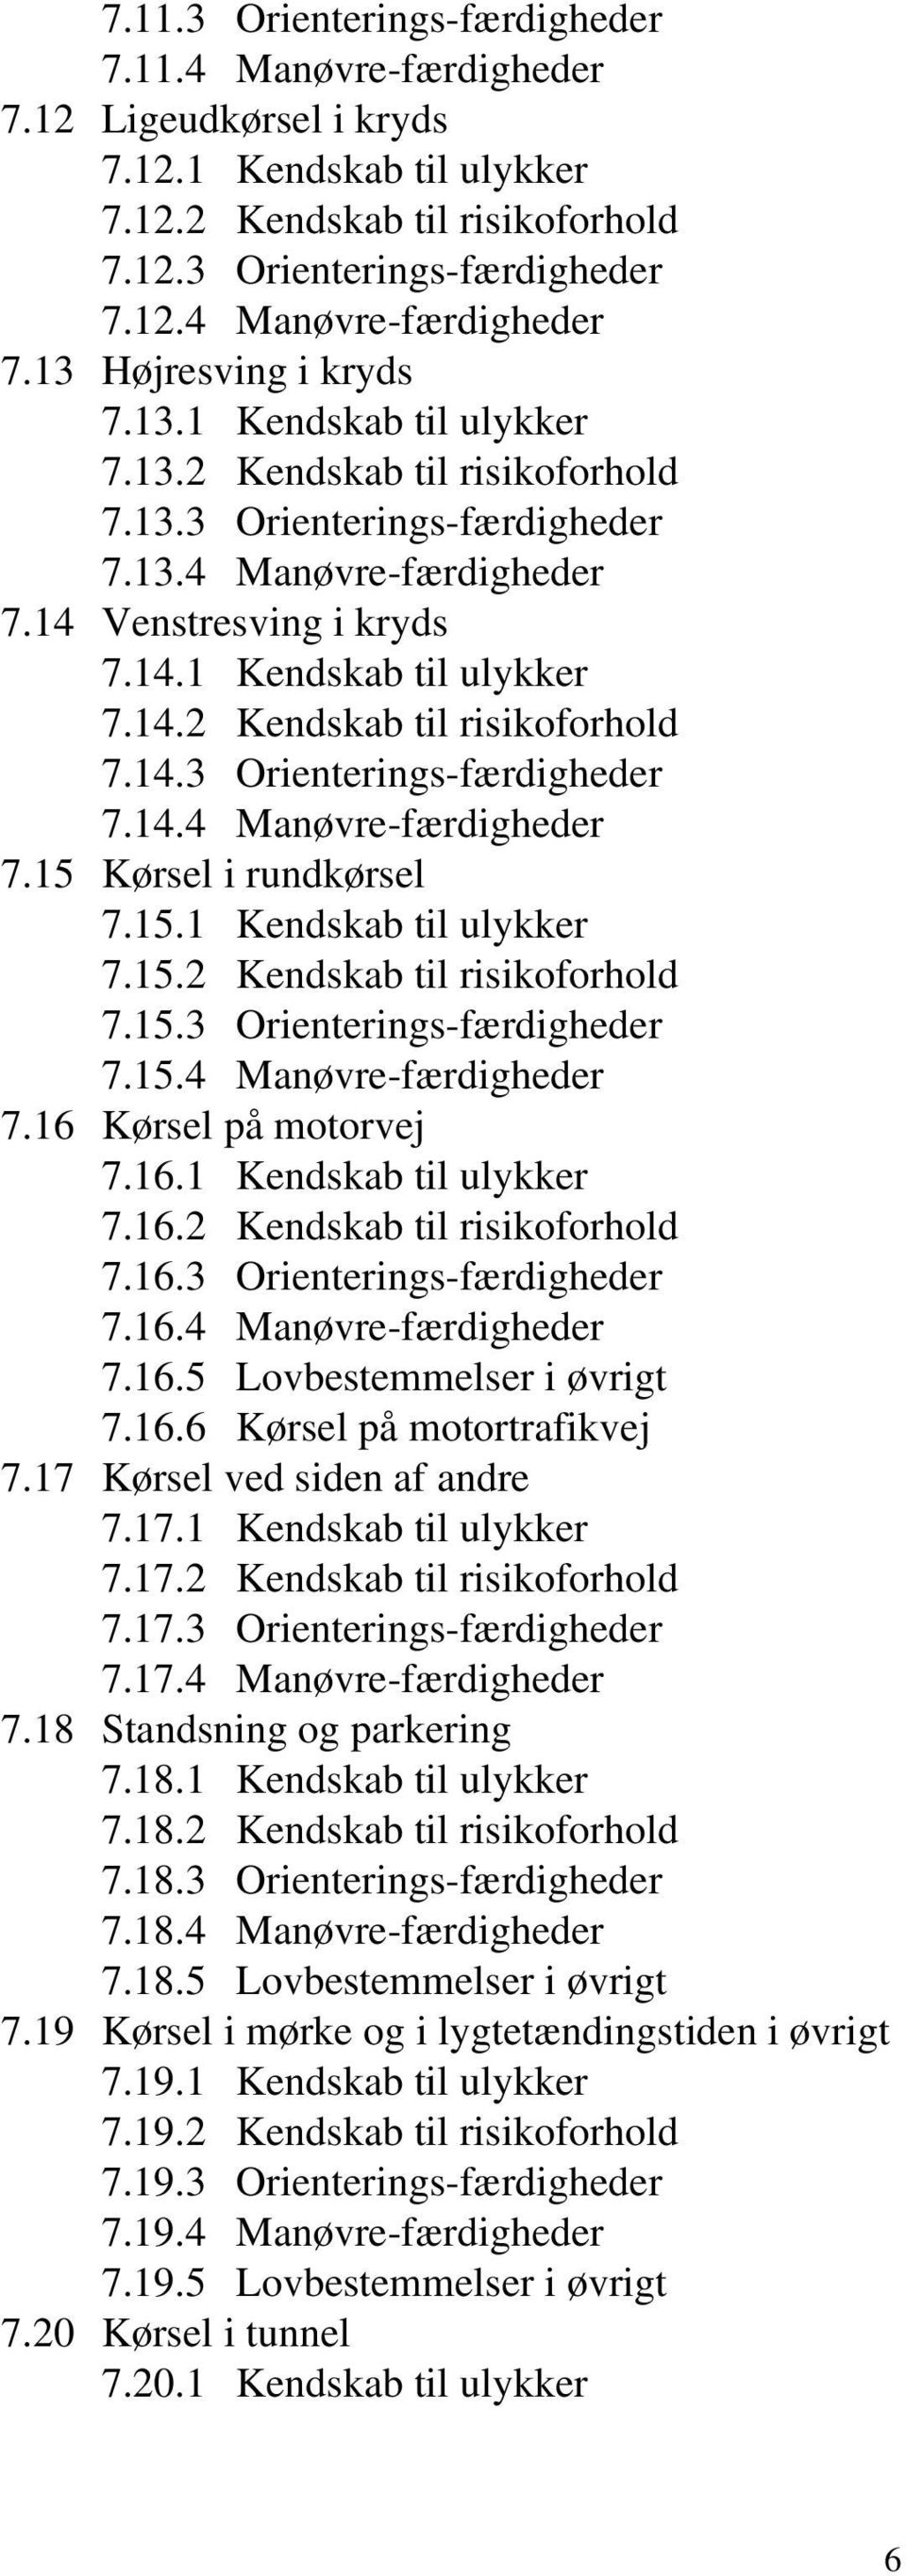 15.1 Kendskab til ulykker 7.15.2 Kendskab til risikoforhold 7.15.3 Orienterings-færdigheder 7.15.4 Manøvre-færdigheder 7.16 Kørsel på motorvej 7.16.1 Kendskab til ulykker 7.16.2 Kendskab til risikoforhold 7.16.3 Orienterings-færdigheder 7.16.4 Manøvre-færdigheder 7.16.5 Lovbestemmelser i øvrigt 7.